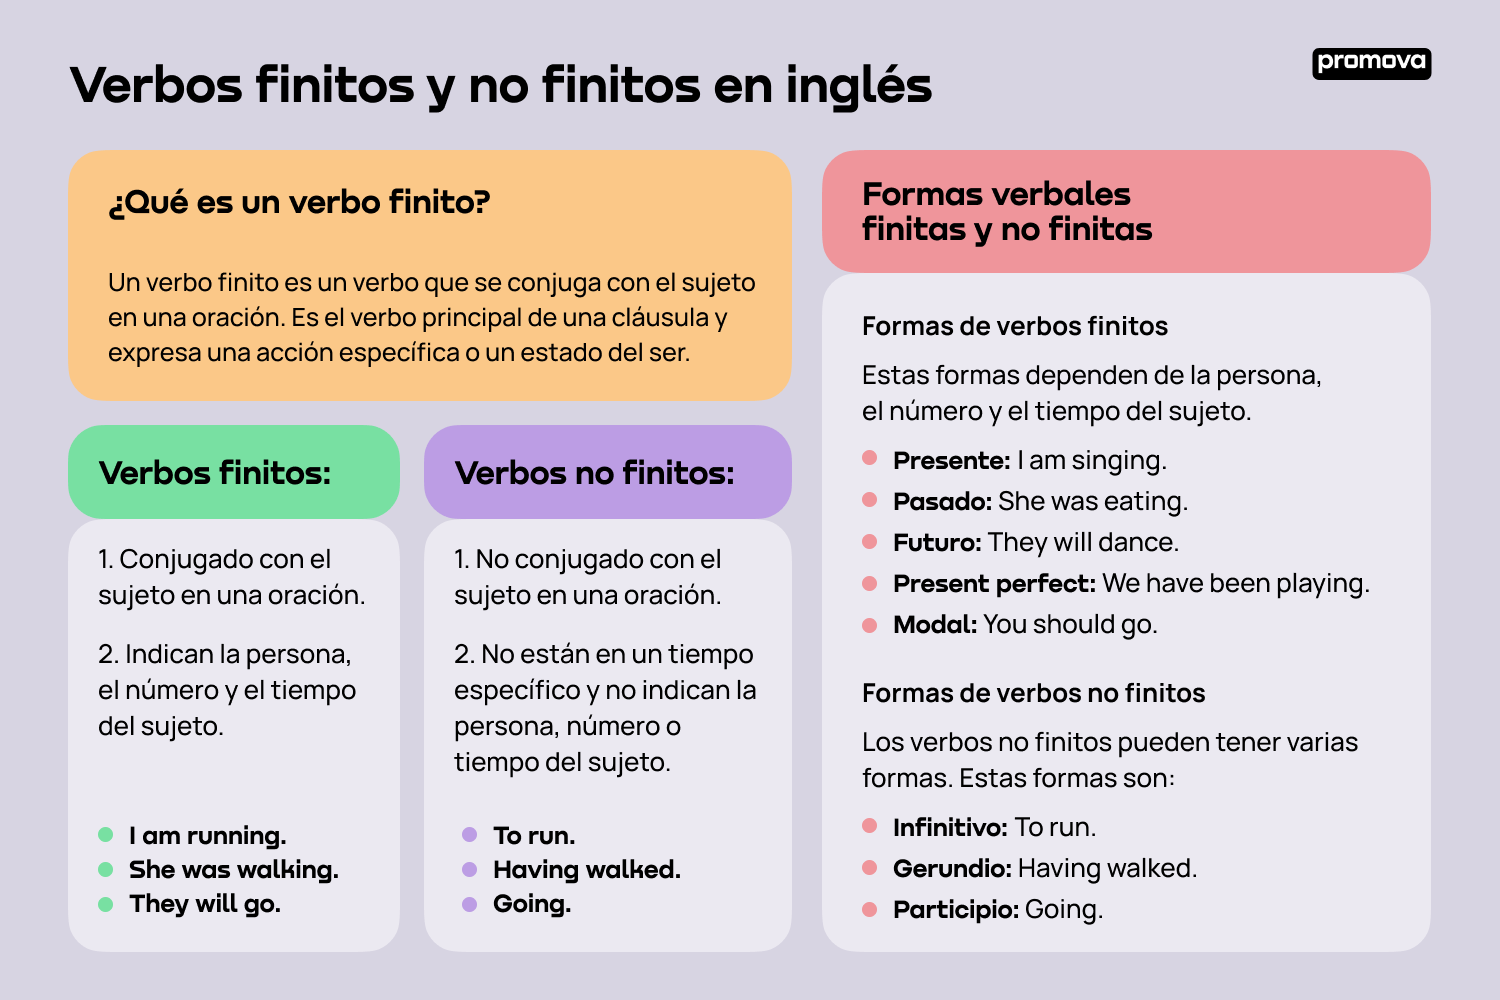 Verbos finitos y no finitos en inglés: Diferencias y ejemplos